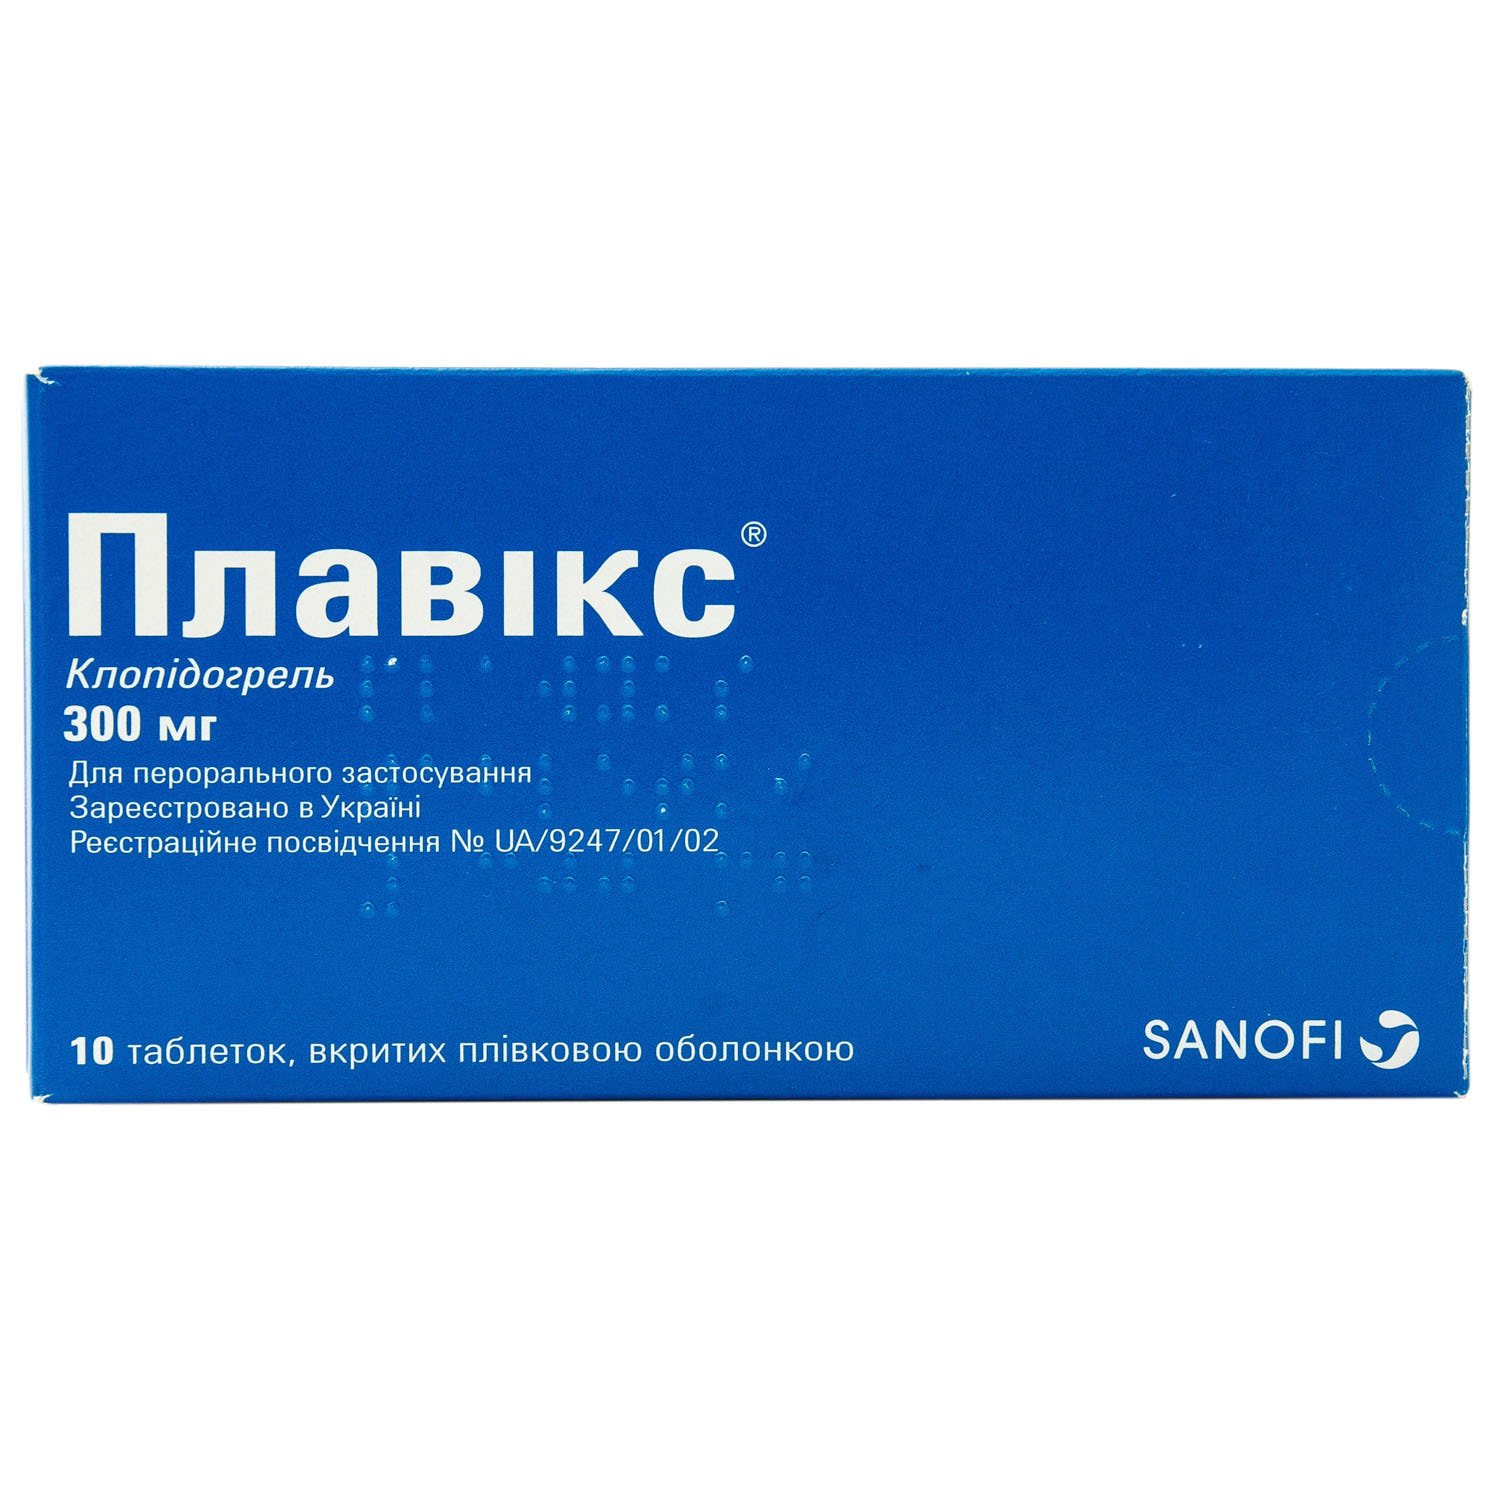 Плавікс таблетки по 300 мг, 10 шт.: інструкція, ціна, відгуки, аналоги .